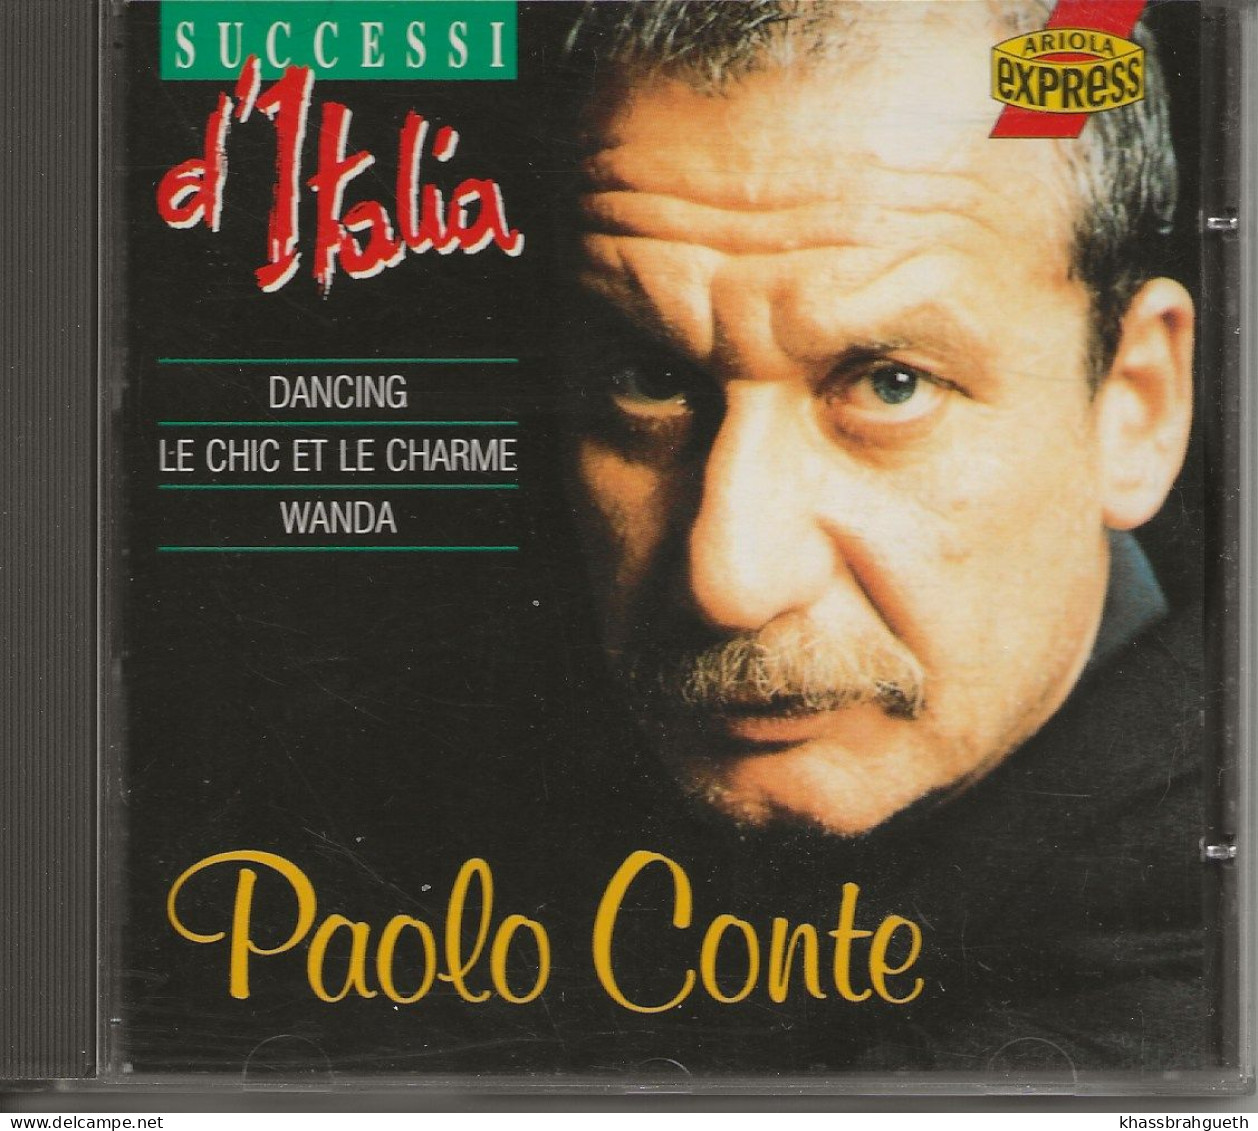 PAOLO CONTE - SUCCESSI D'ITALIA - ARIOLA (1993) (CD ALBUM) - Other - Italian Music